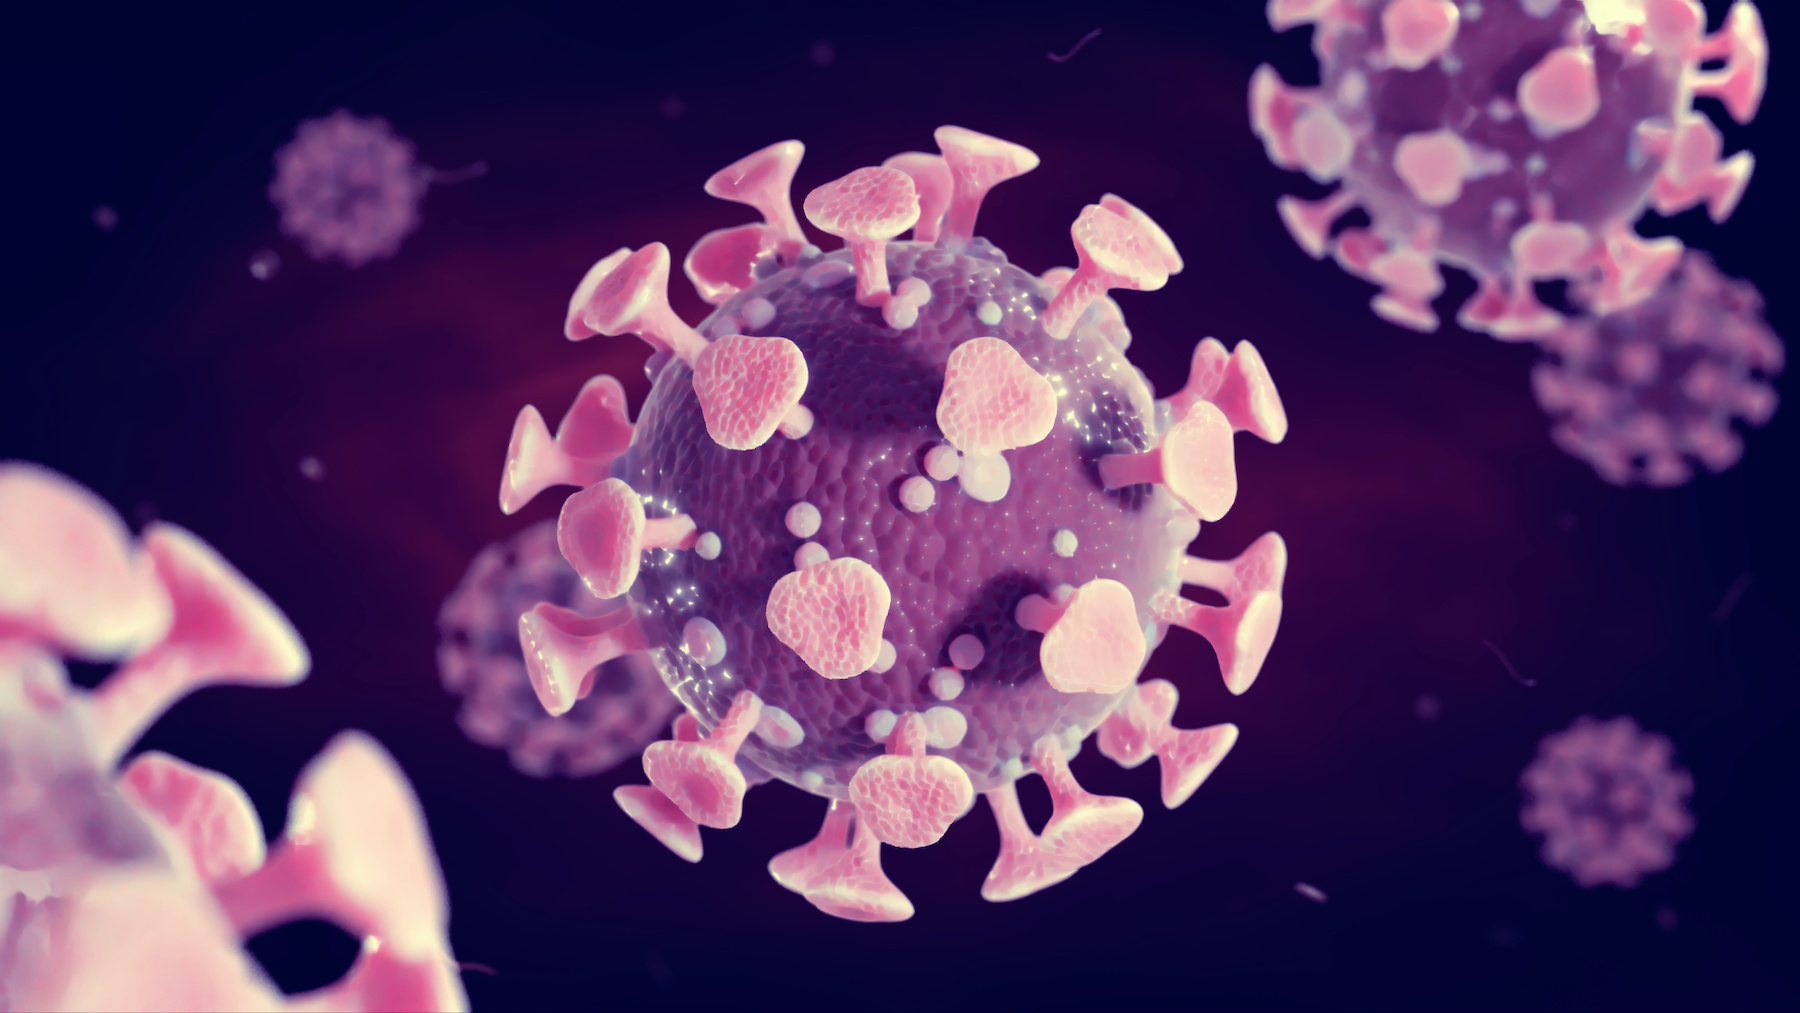 Le coronavirus peut faire fusionner les cellules pour se répliquer à l'abri de l'immunité. © dottedyeti, Adobe Stock